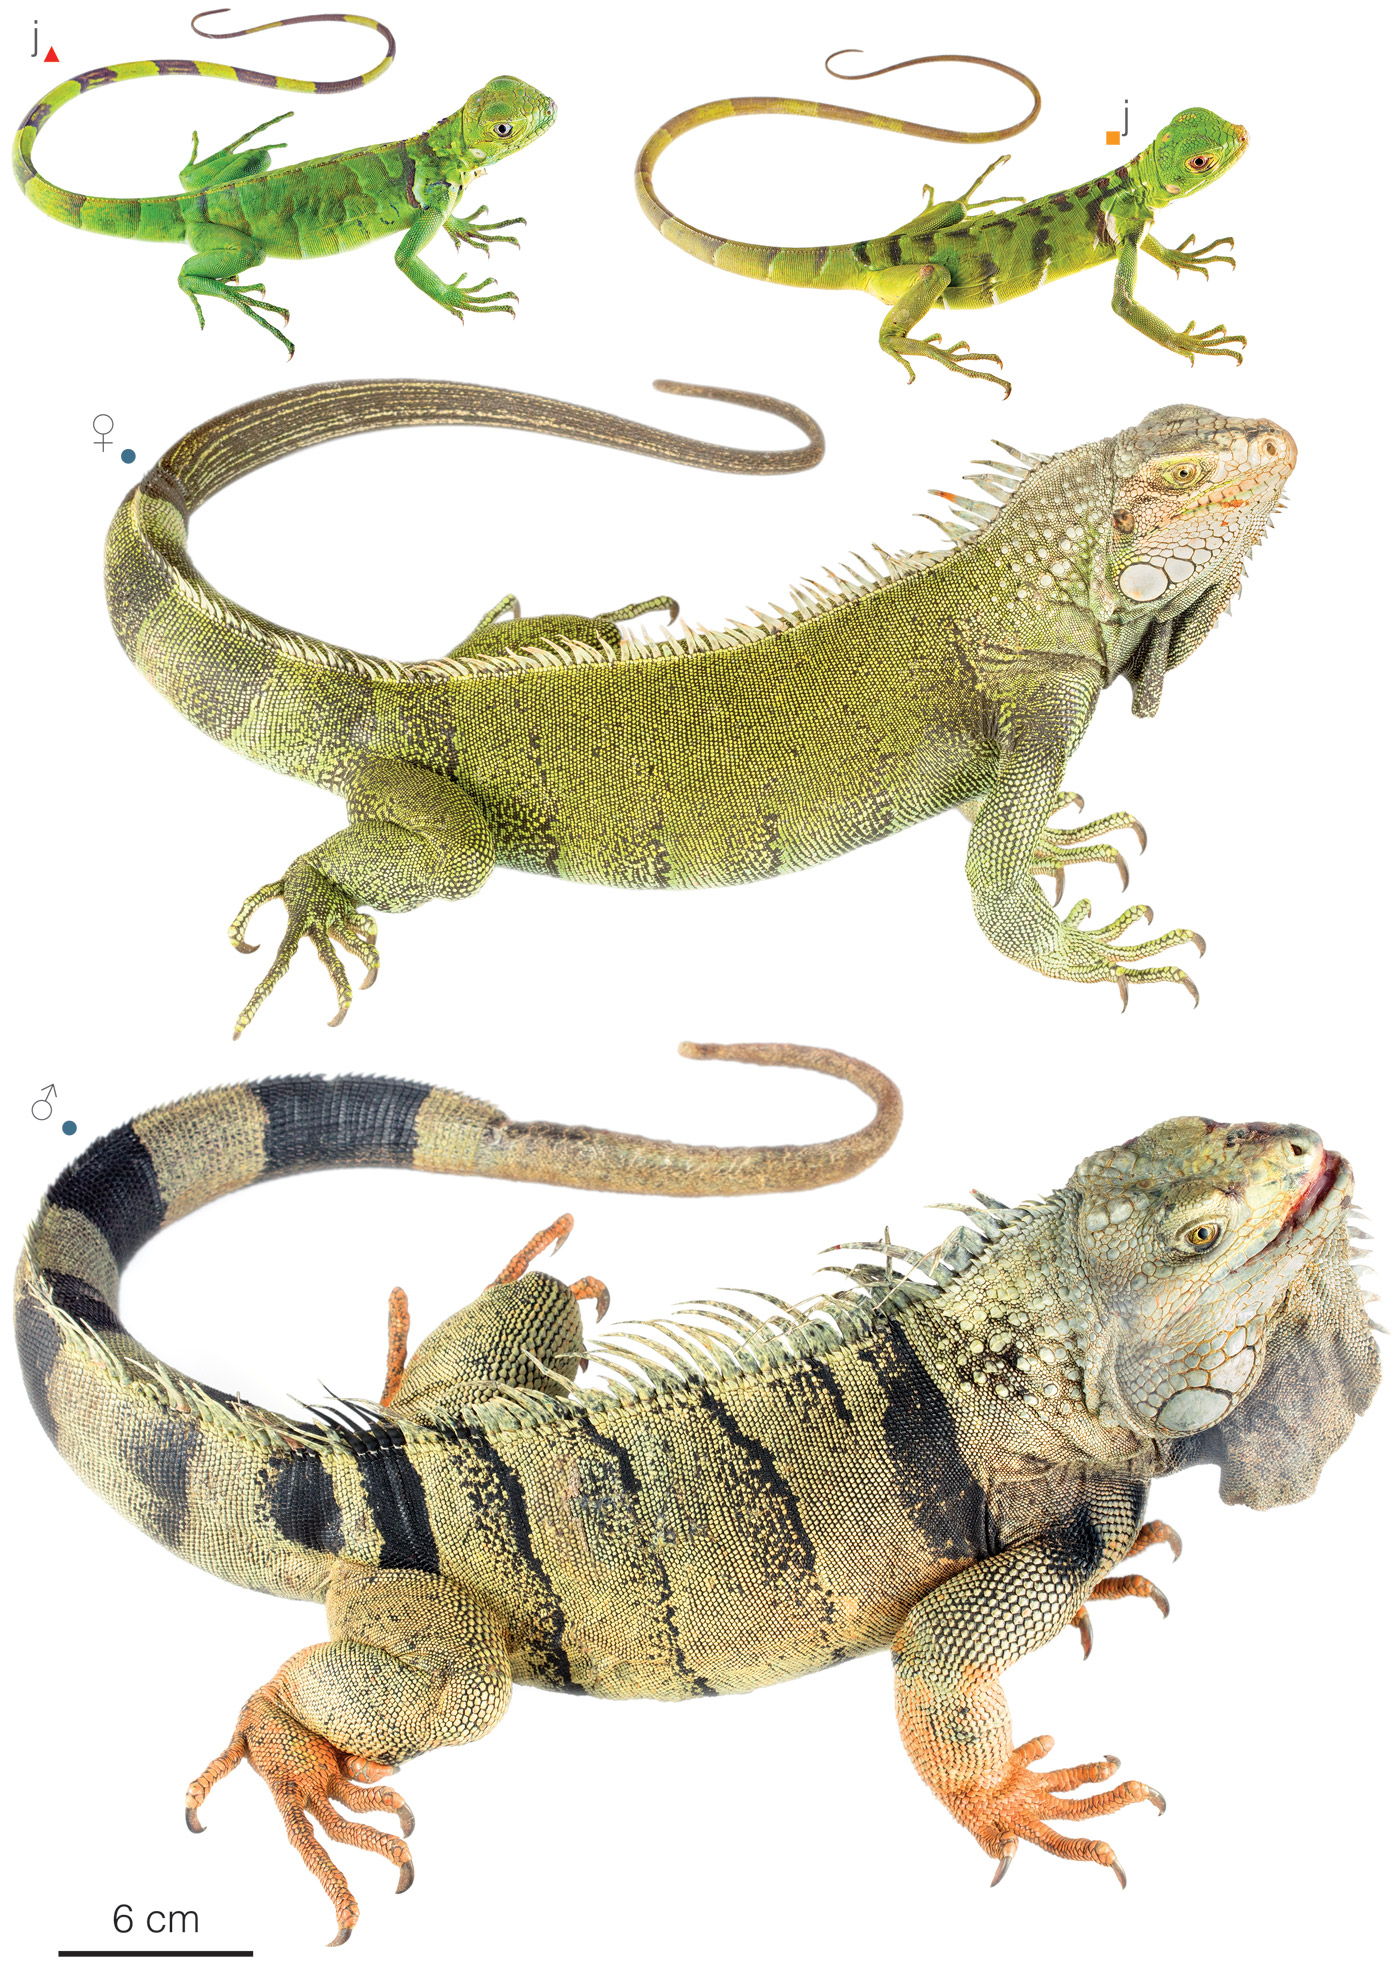 Figure showing variation among individuals of Iguana iguana